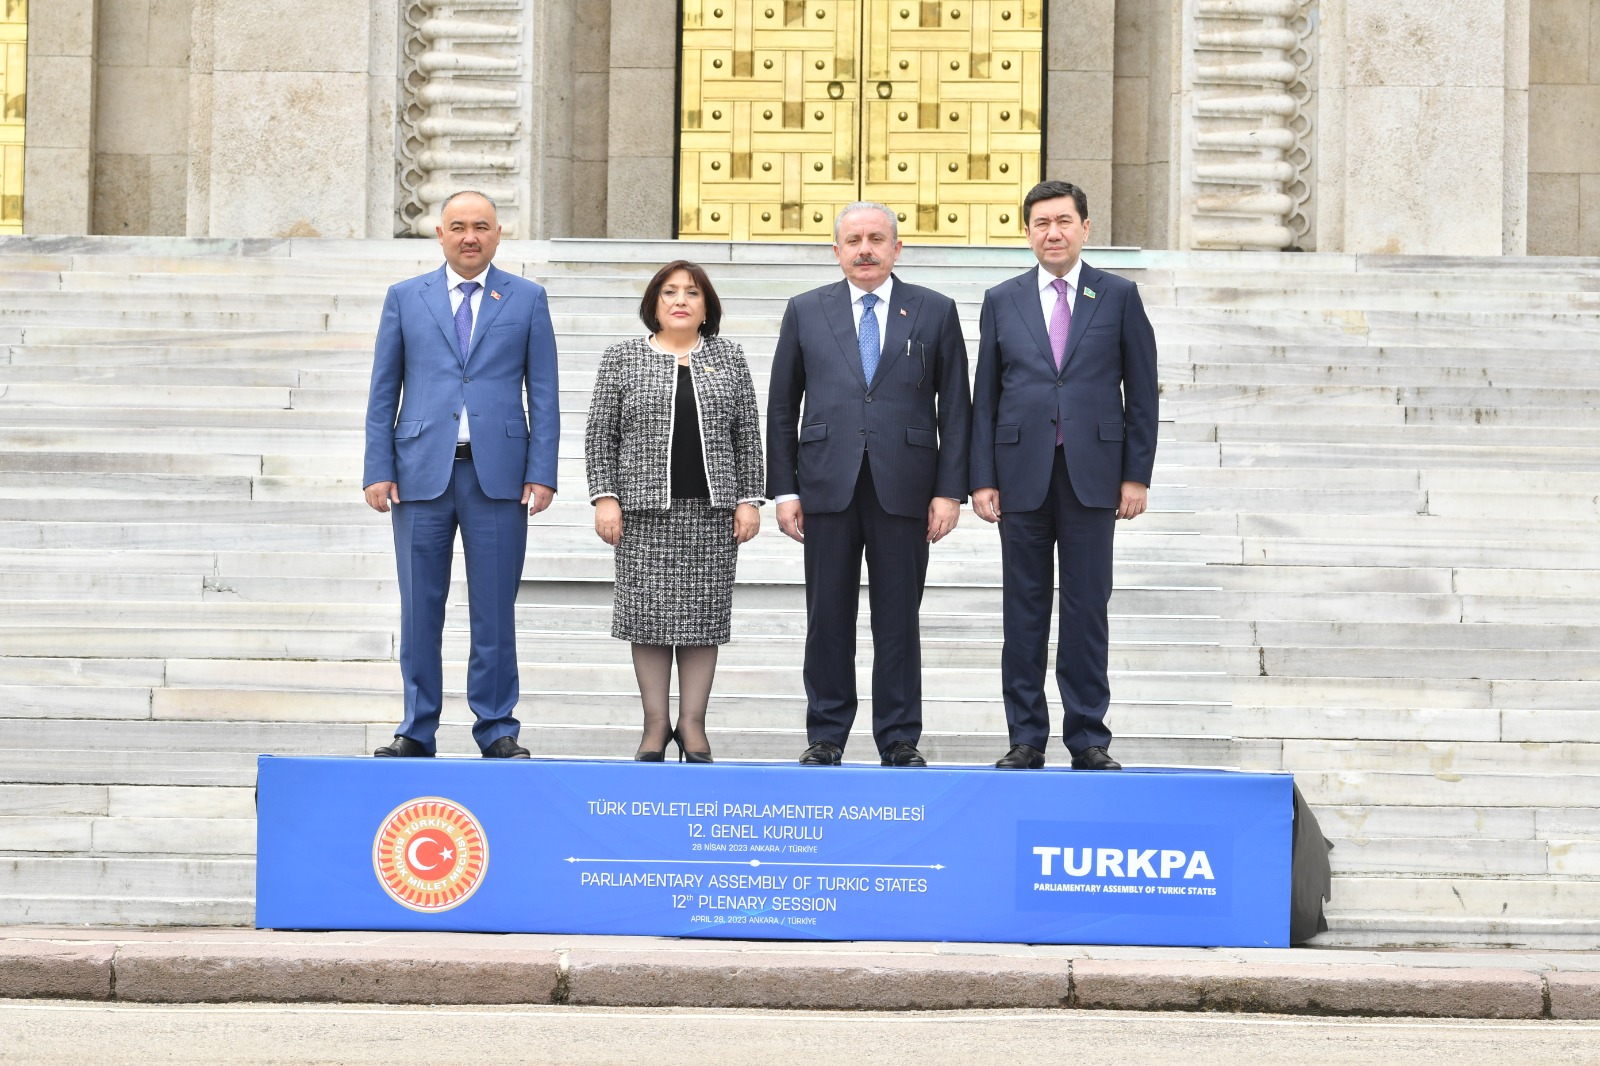 Председатель Мажилиса призвал укреплять дружбу между тюркскими народами через парламентскую дипломатию